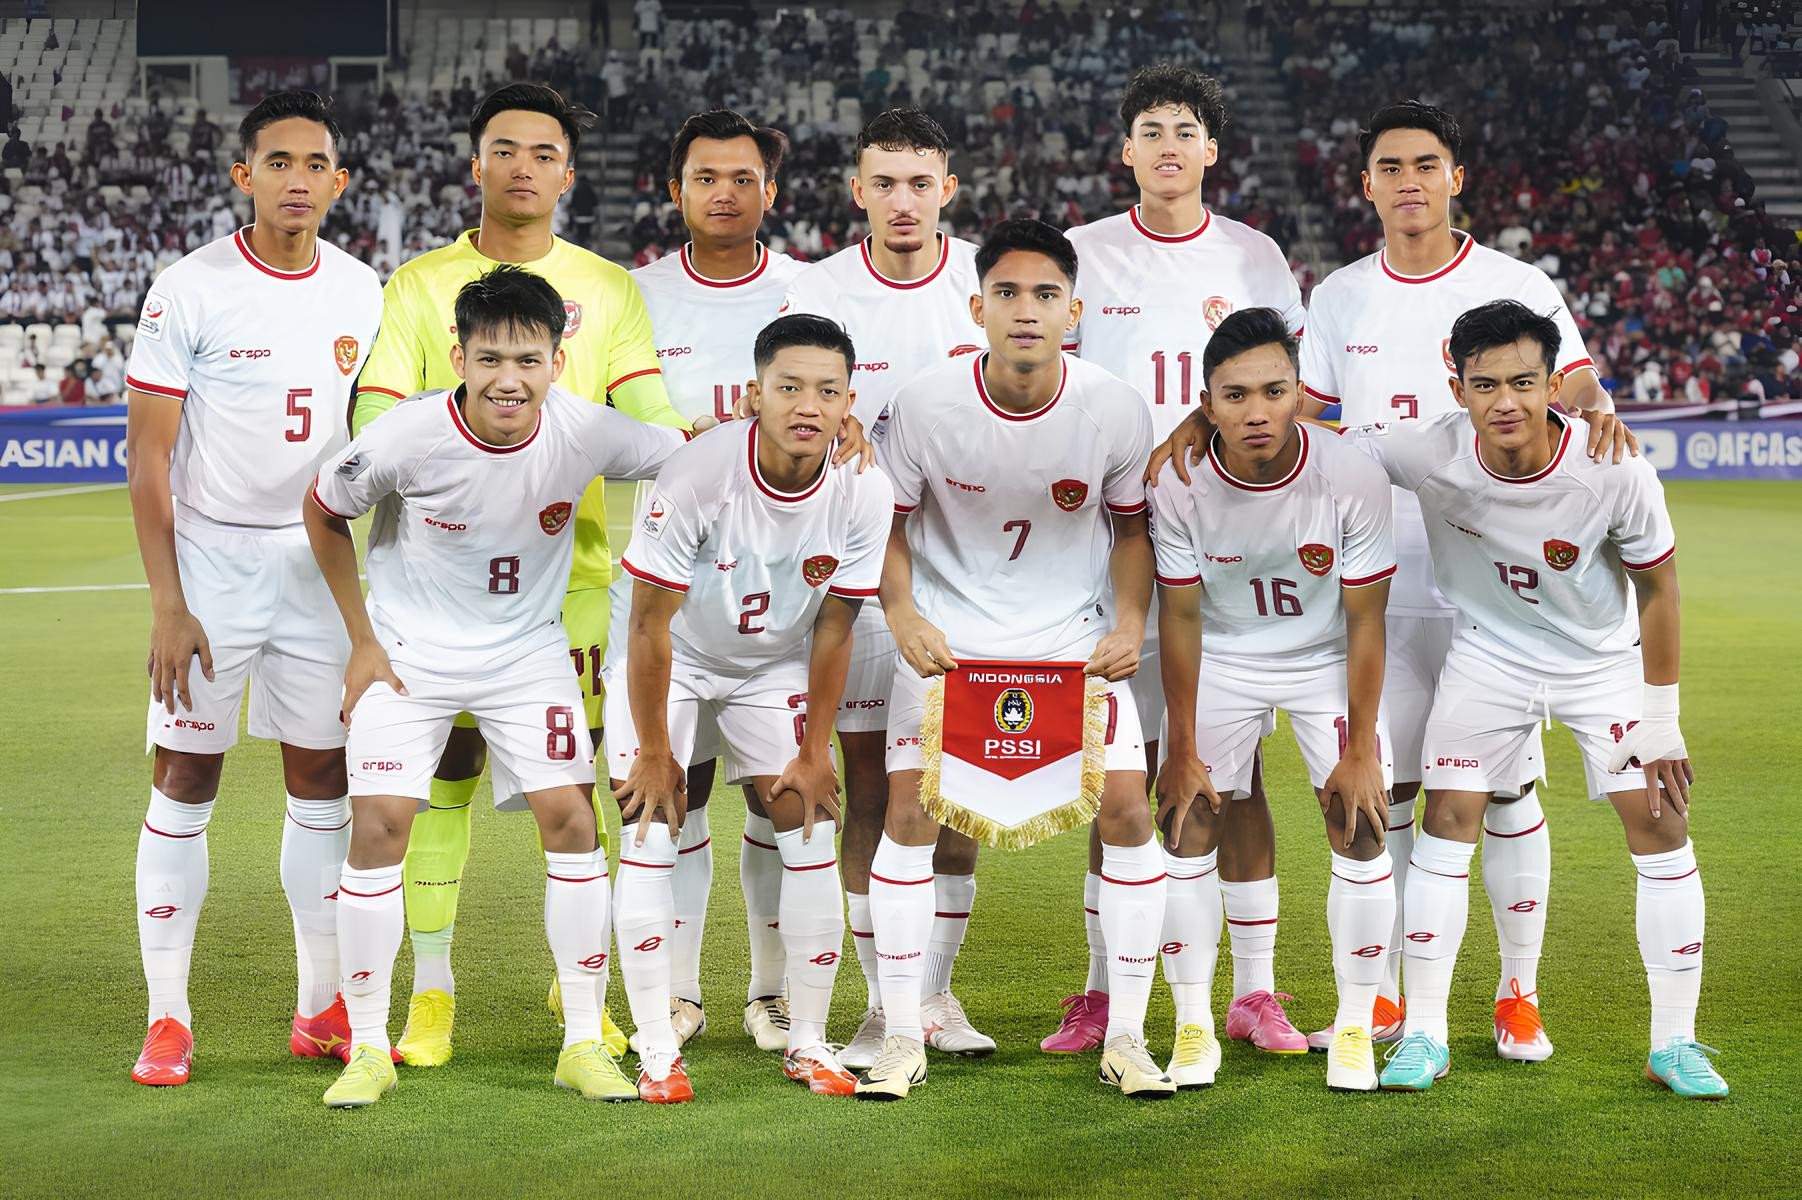 lewat drama adu penalti, timnas u-23 indonesia tendang korea